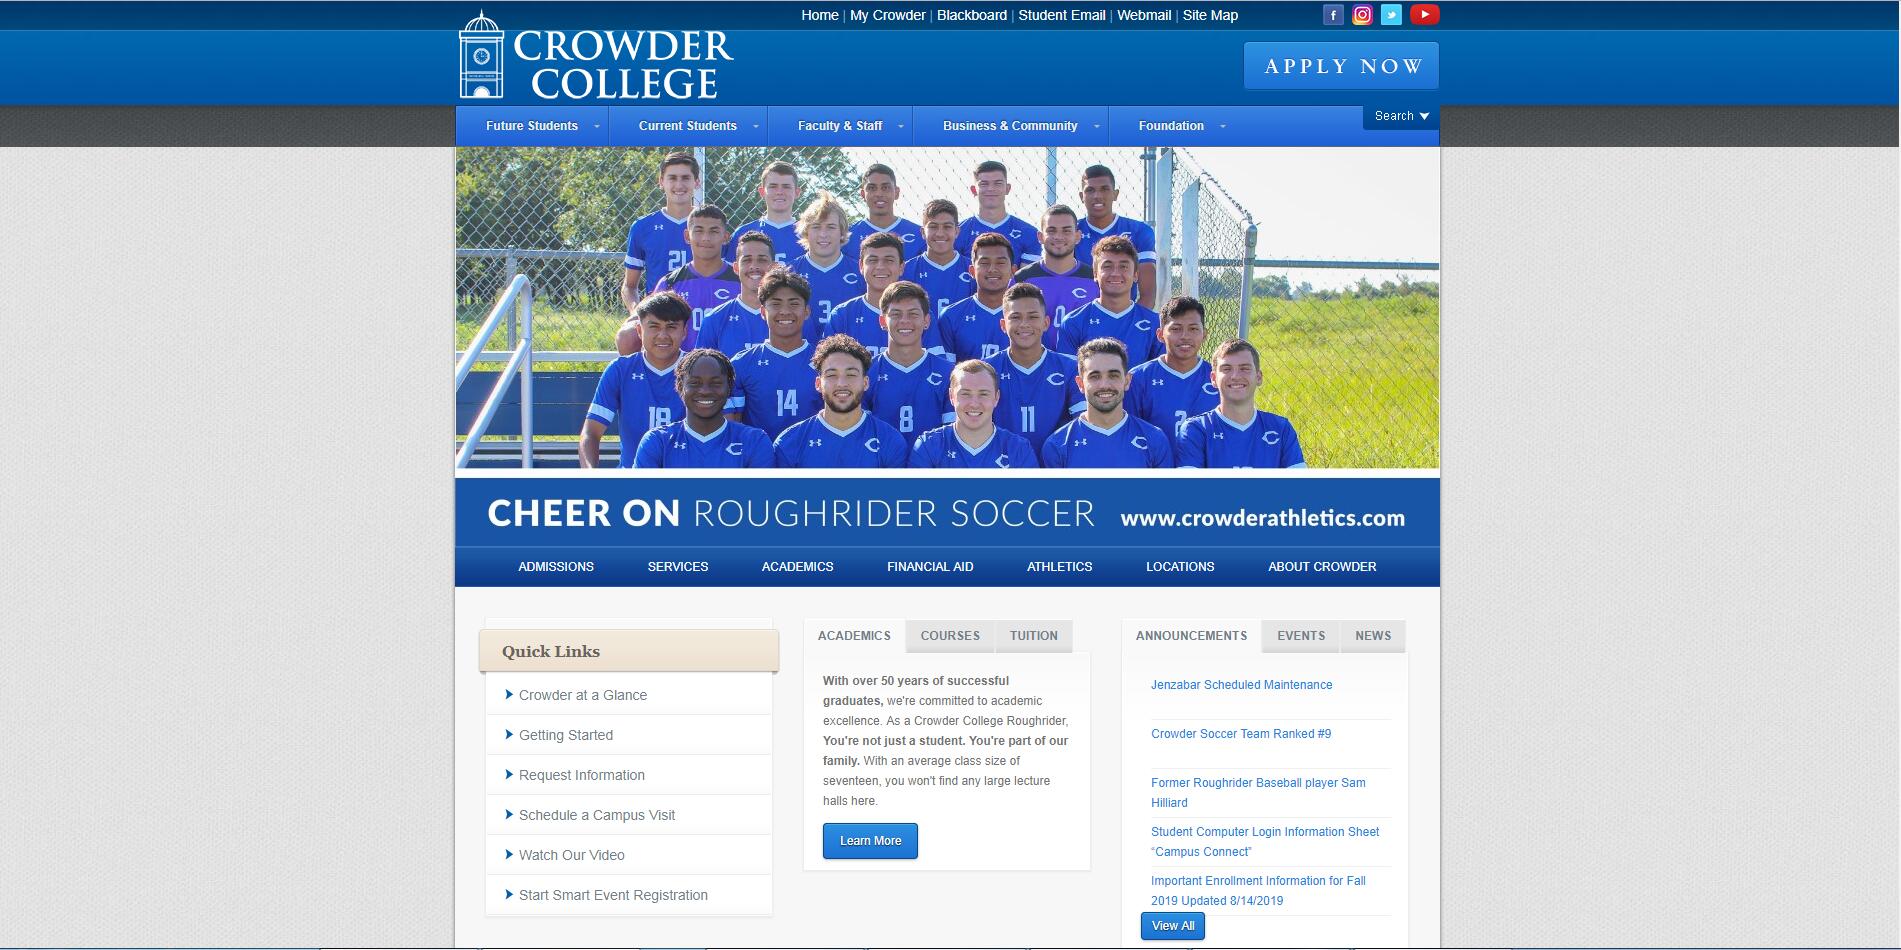 Crowder College